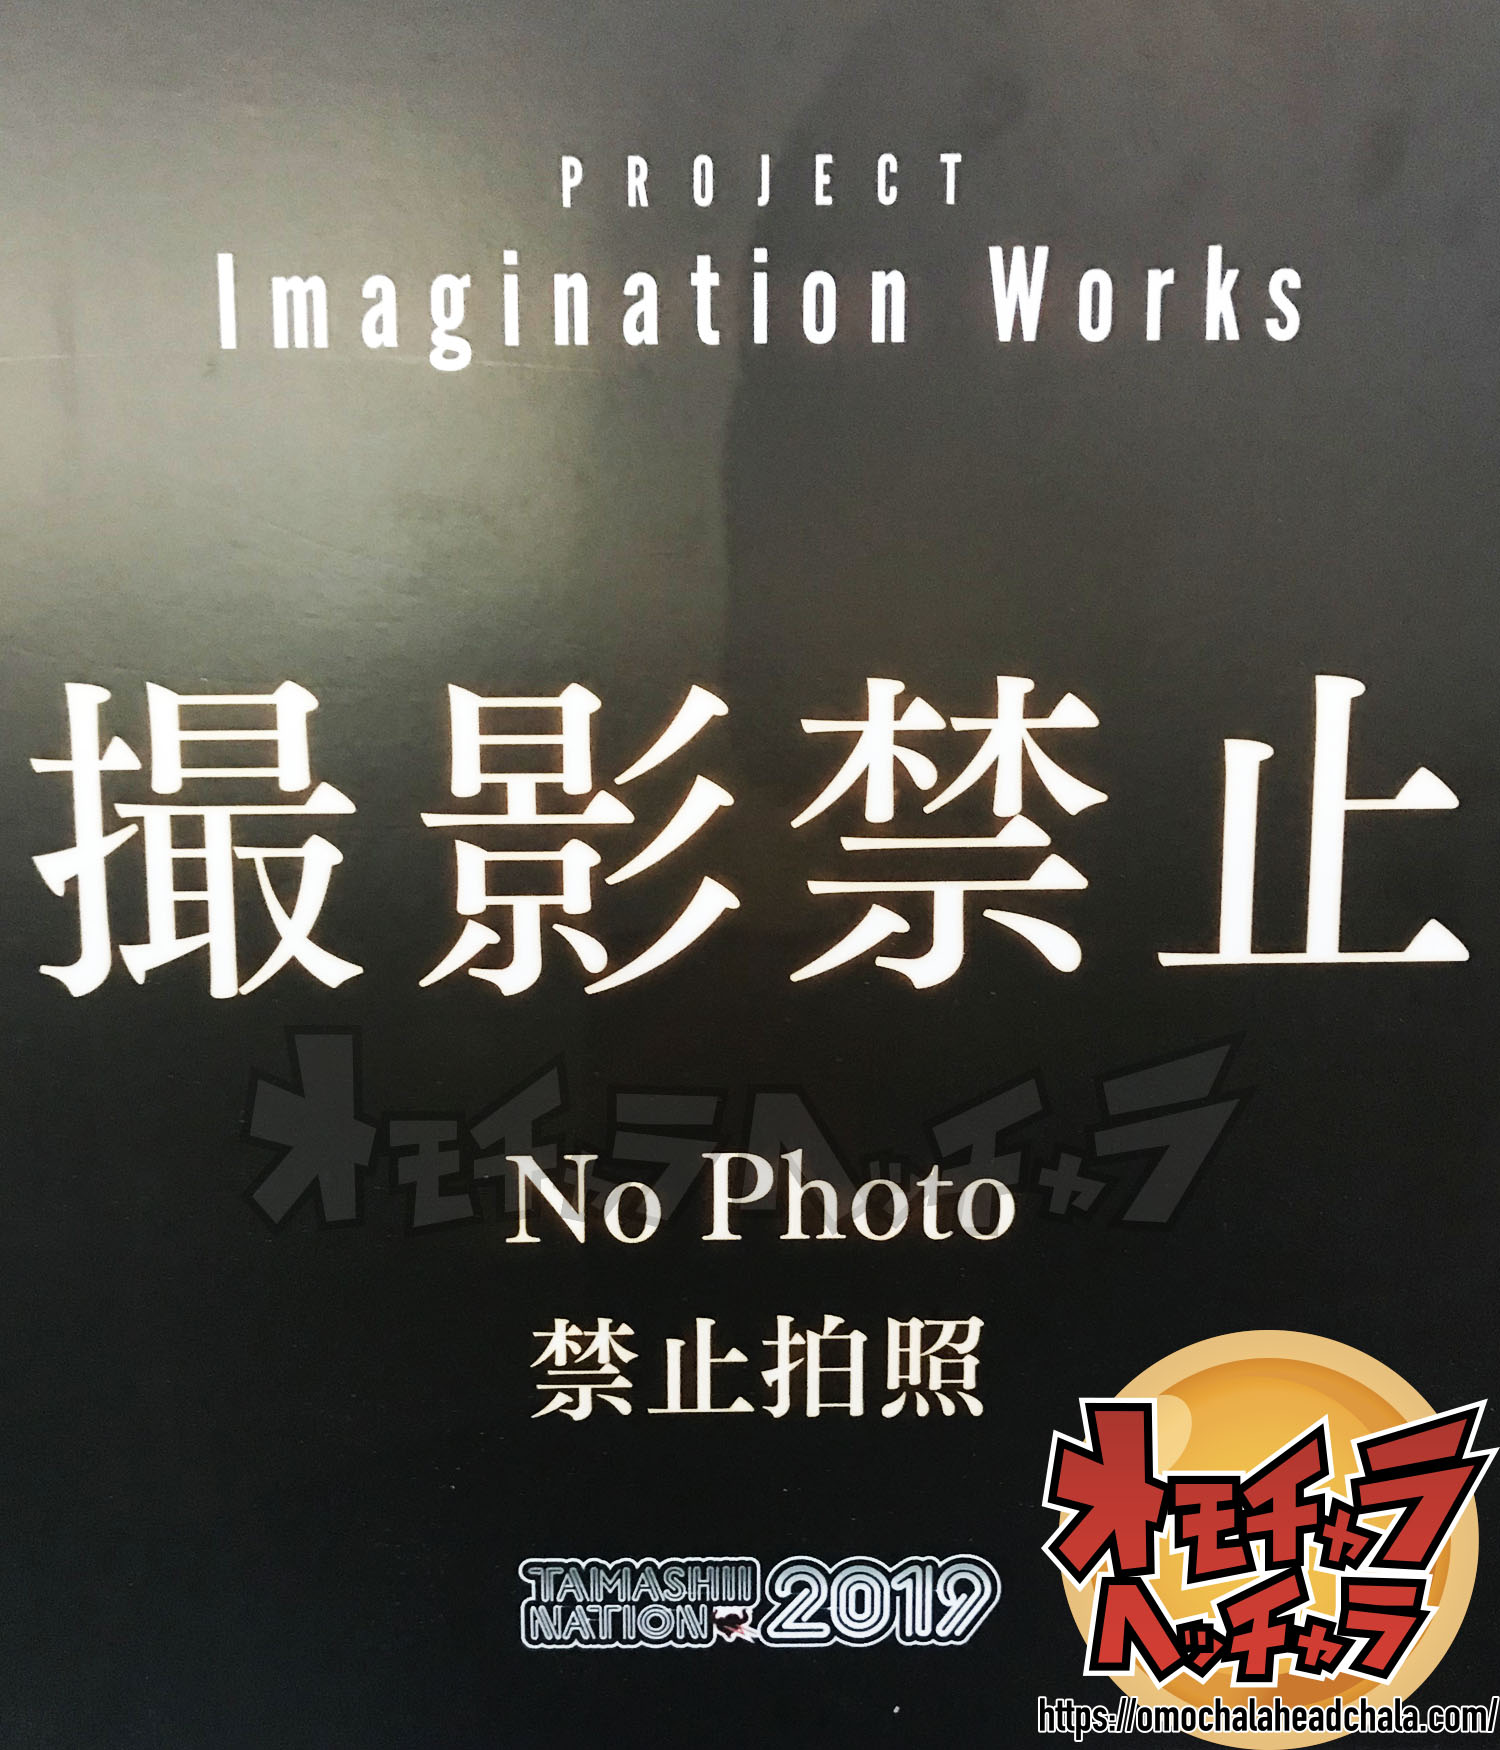 ドラゴンボールフィギュアレビューブログの魂ネイション2019のPROJECT Imagination Works（プロジェクトイマジネーションウォークス）撮影禁止